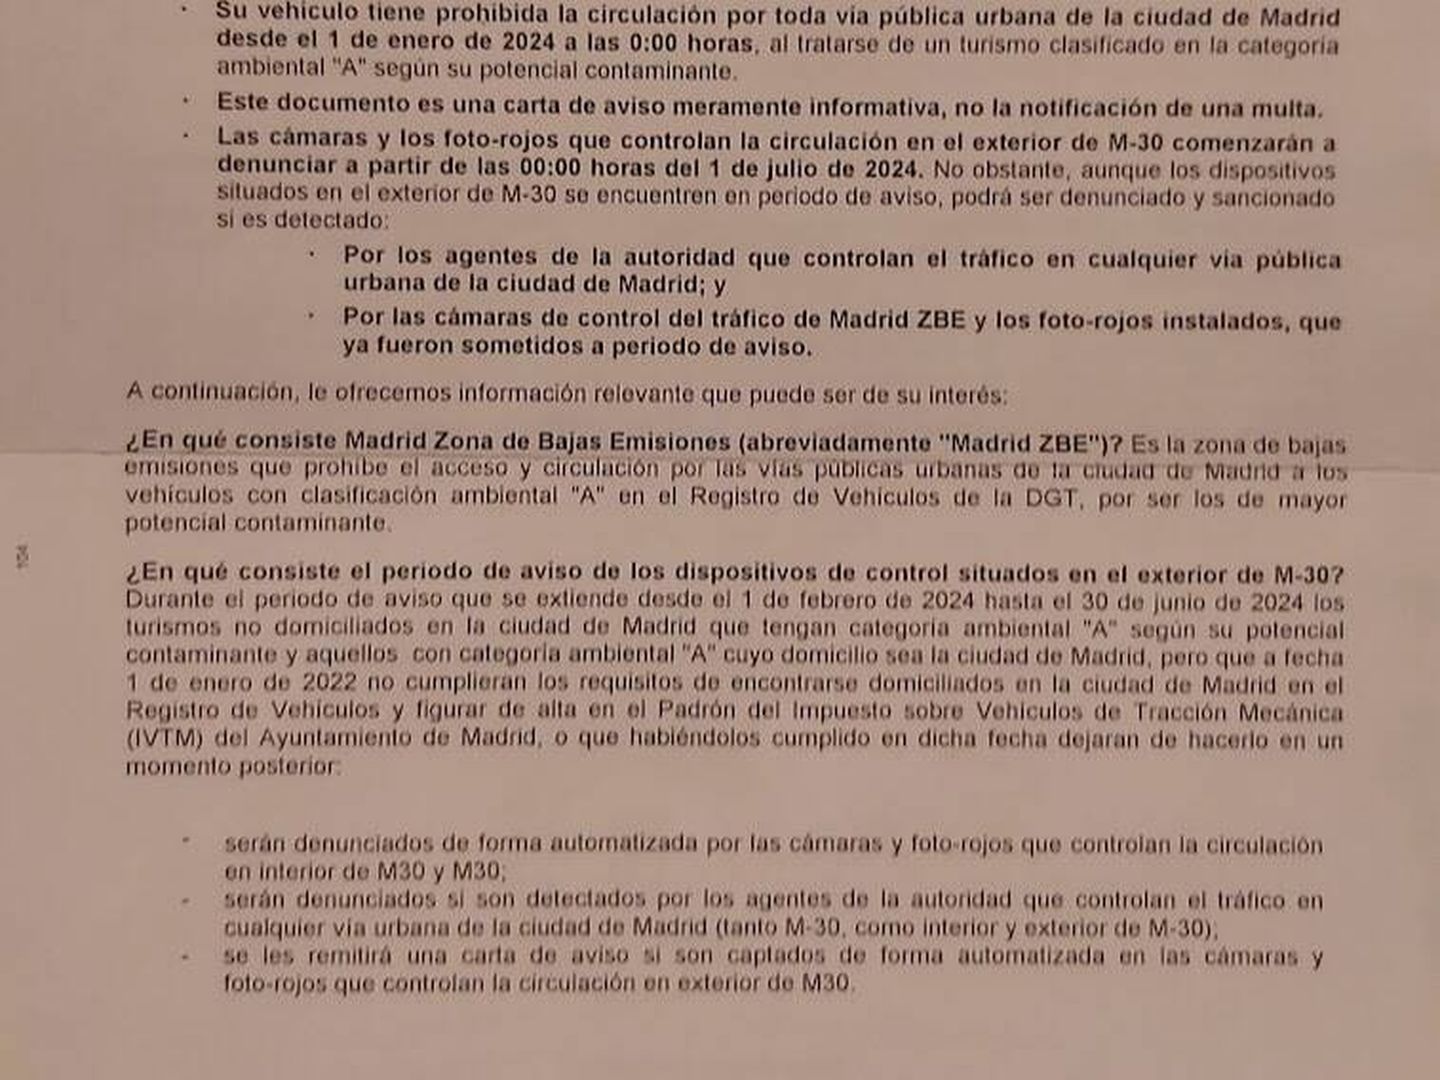 Contenido de la carta de aviso que está enviando el Ayuntamiento de Madrid a los conductores de vehículos que incumplen las normas fuera de la M-30, y que de momento no conlleva sanción